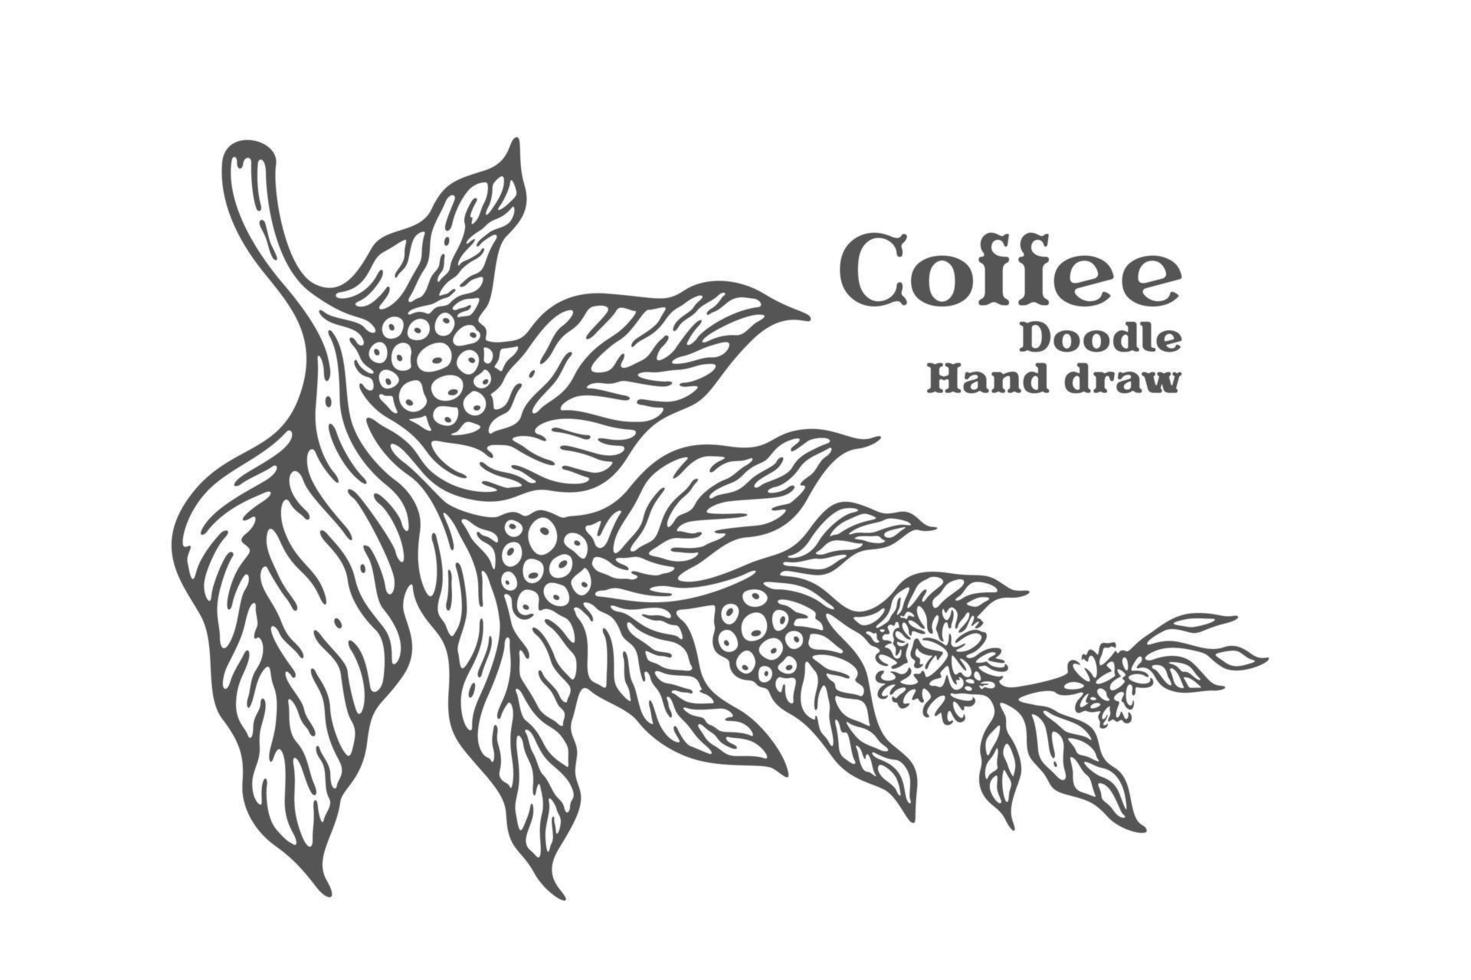 rama de café con frutas y flores dibujado a mano ilustración vector